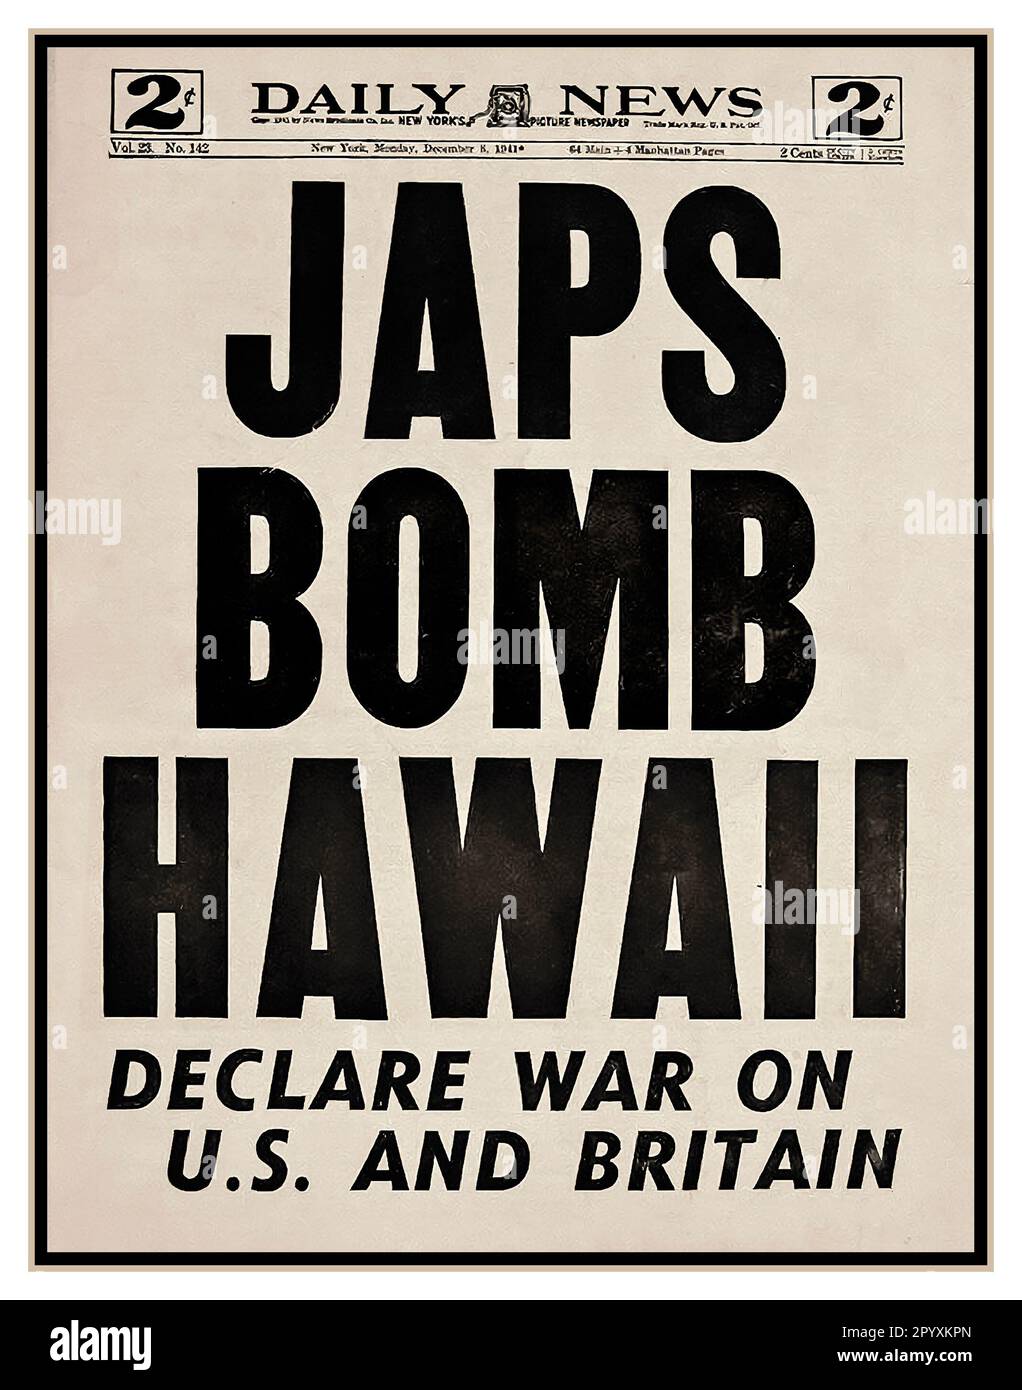 I GIAPPONESI BOMBARDANO LE HAWAII, titolo del giornale dell'8 dicembre. PEARL HARBOR 7 dicembre 1941 bombe piovono su Pearl Harbor e Manila in un improvviso assalto. Notizie di giornale che portarono l'America nella seconda guerra mondiale WW2 l'attacco a Pearl Harbor fu un attacco militare a sorpresa da parte del servizio aereo della Marina imperiale giapponese contro gli Stati Uniti contro la base navale americana a Pearl Harbor a Honolulu, Hawaii, poco prima delle 8:00 (ora locale) domenica 7 dicembre 1941. Foto Stock